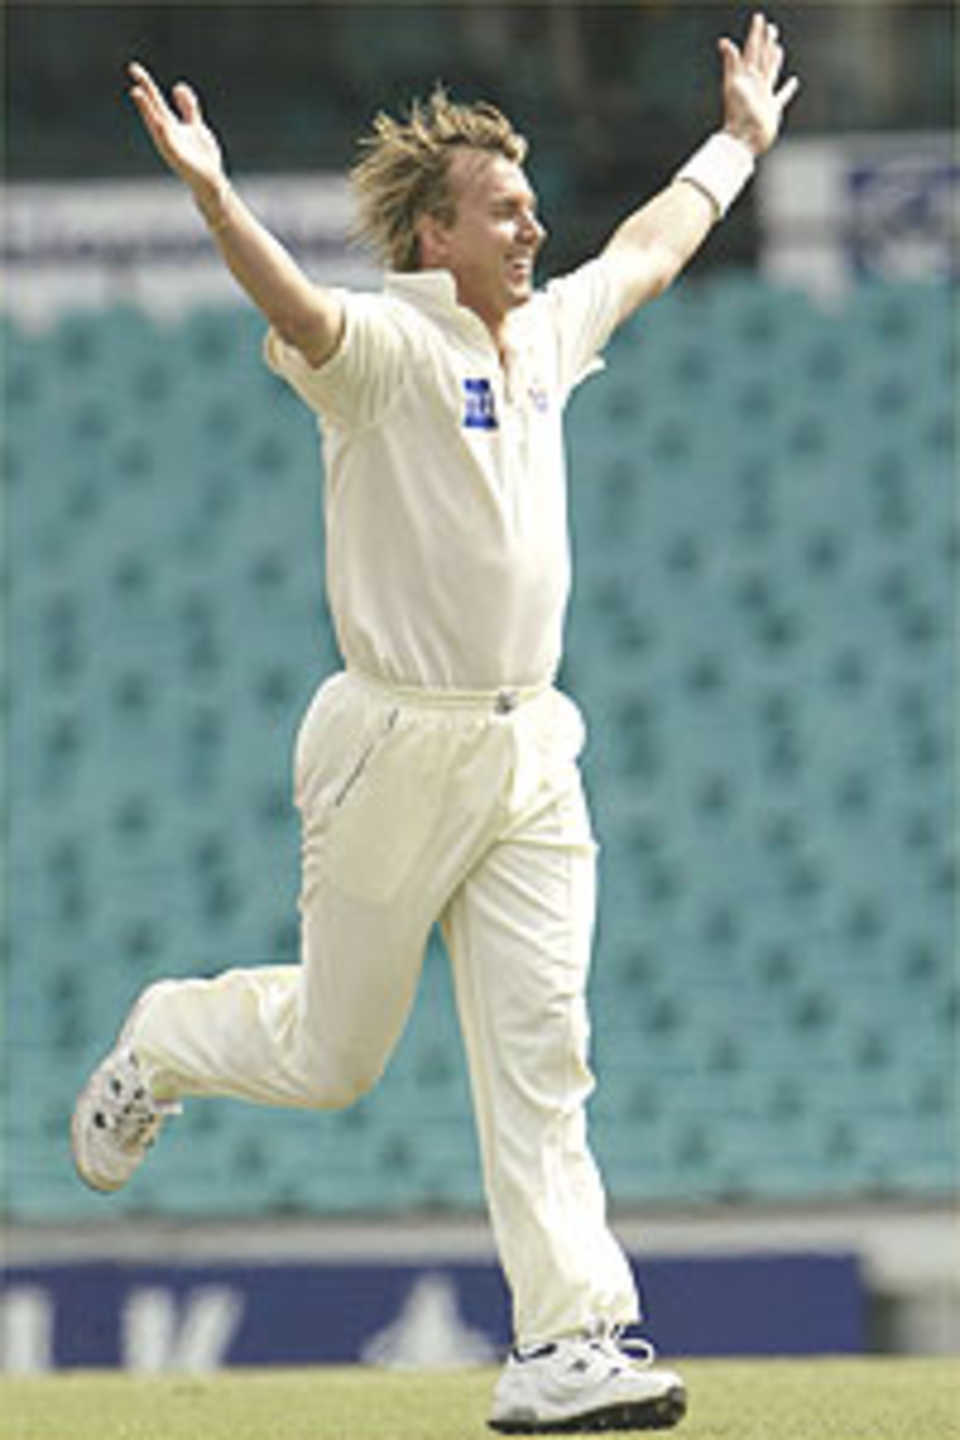 Lee celebrates a wicket